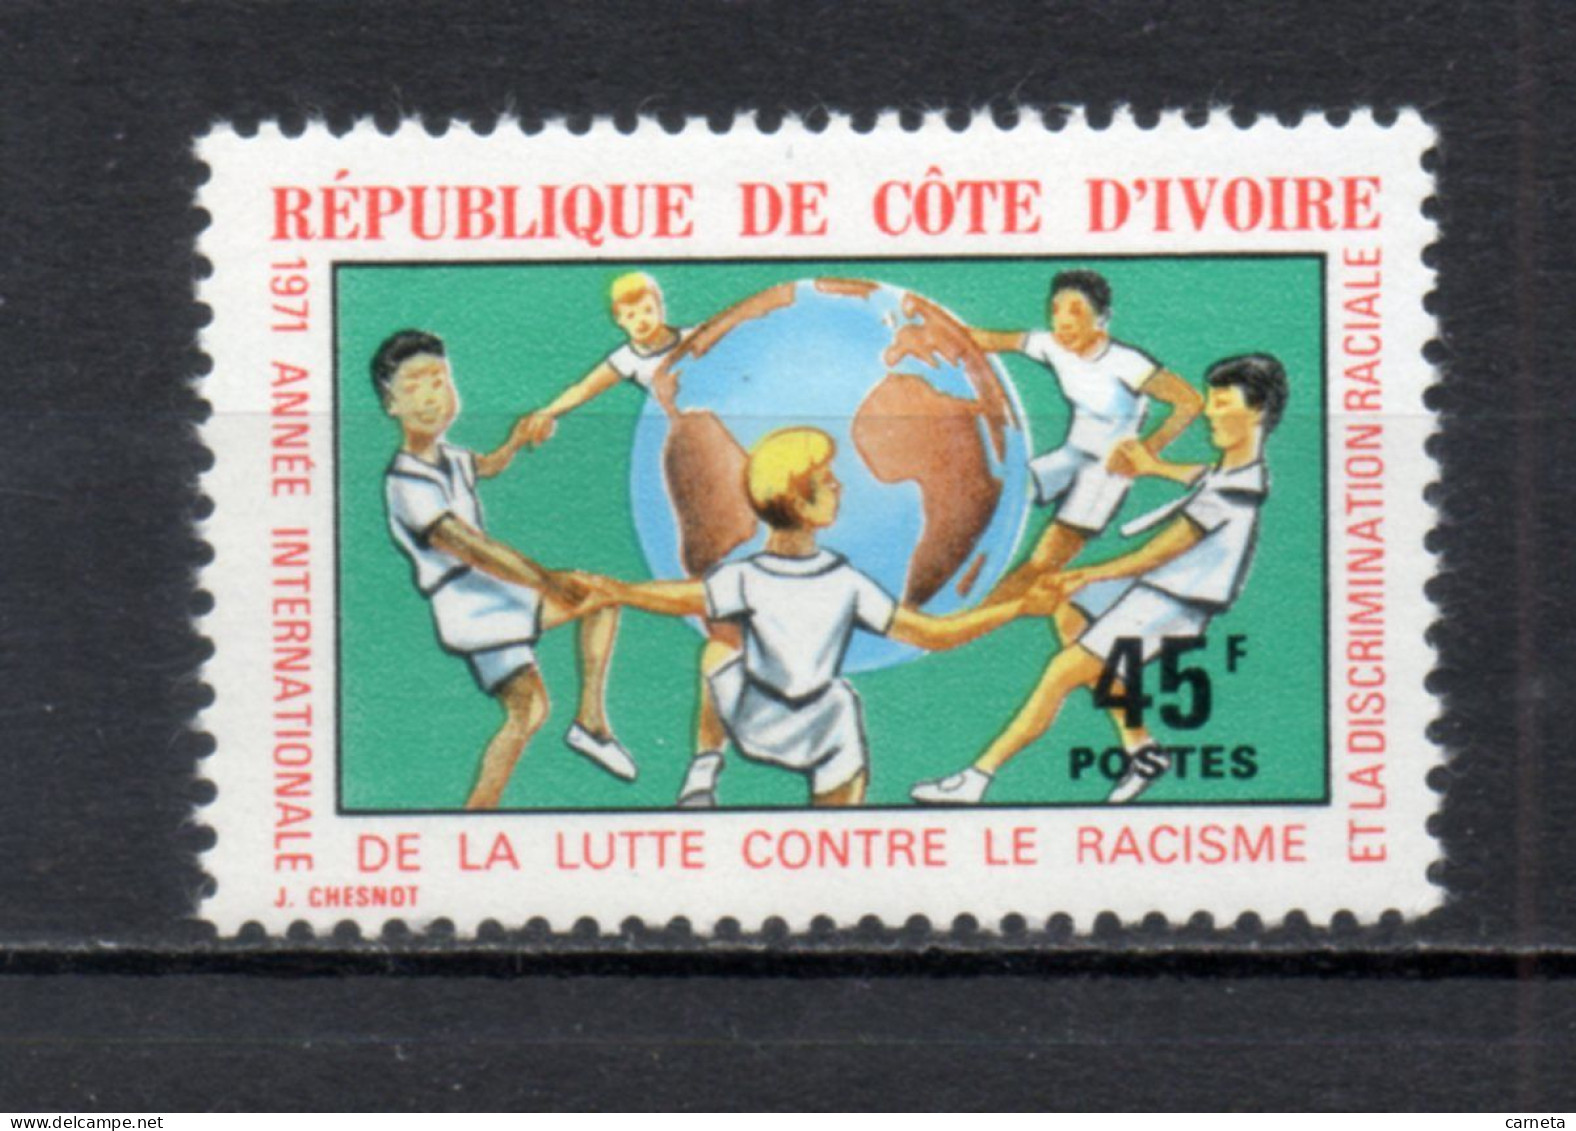 COTE D'IVOIRE N° 323  NEUF SANS CHARNIERE COTE 1.00€   LUTTE CONTRE LE RACISME - Ivory Coast (1960-...)